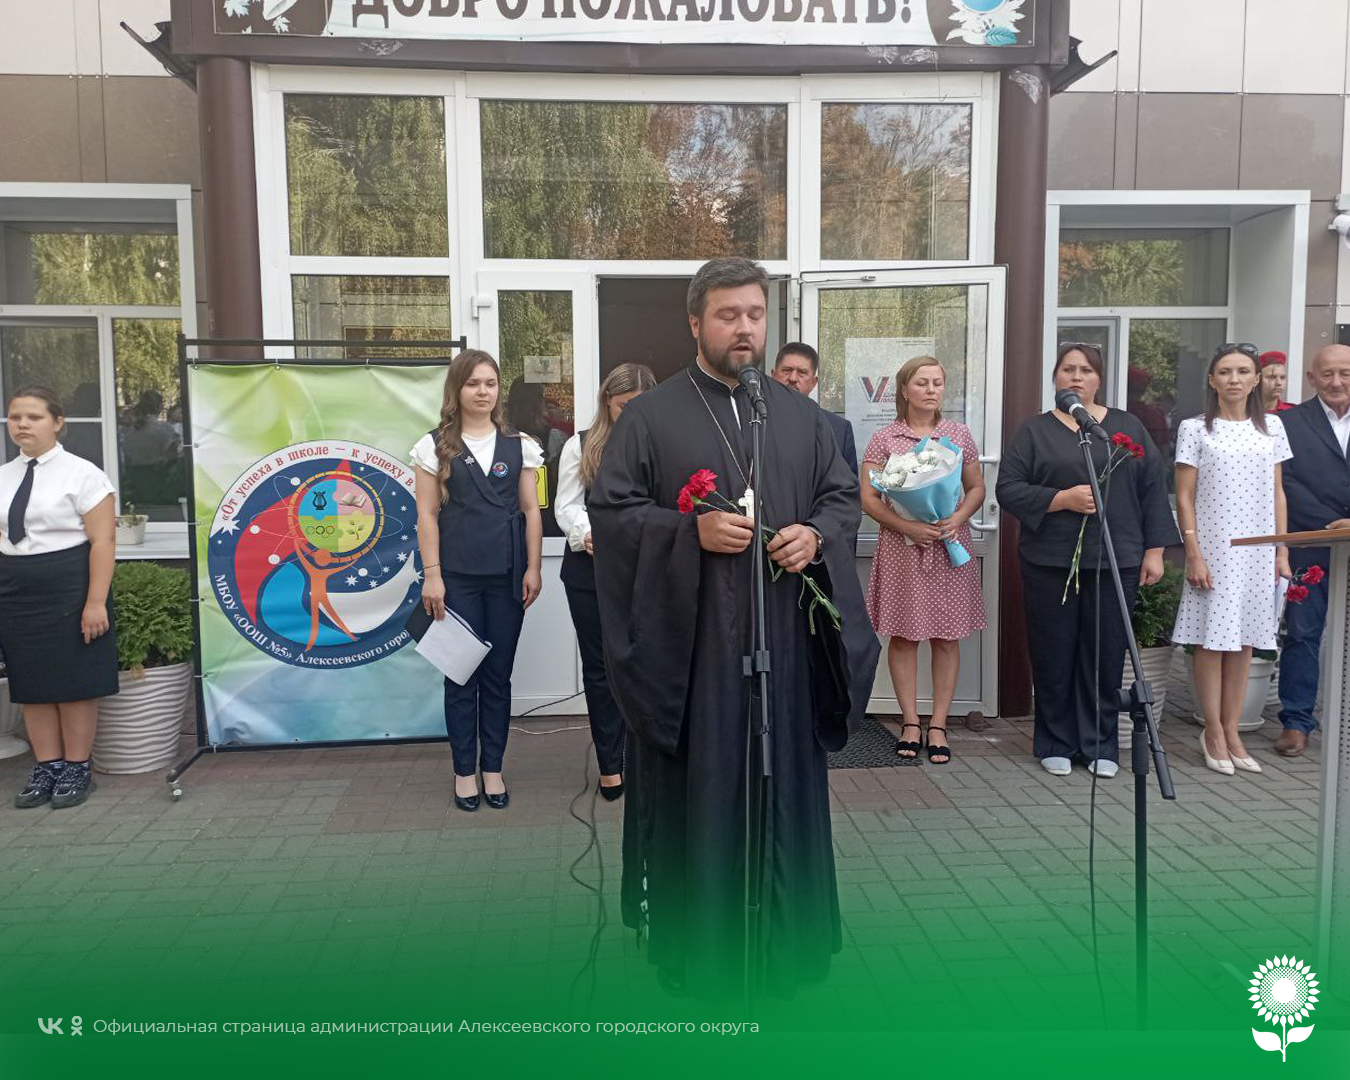 На базе МБОУ «Общеобразовательной школы №5» Алексеевского городского округа состоялось торжественное открытие мемориальной доски.